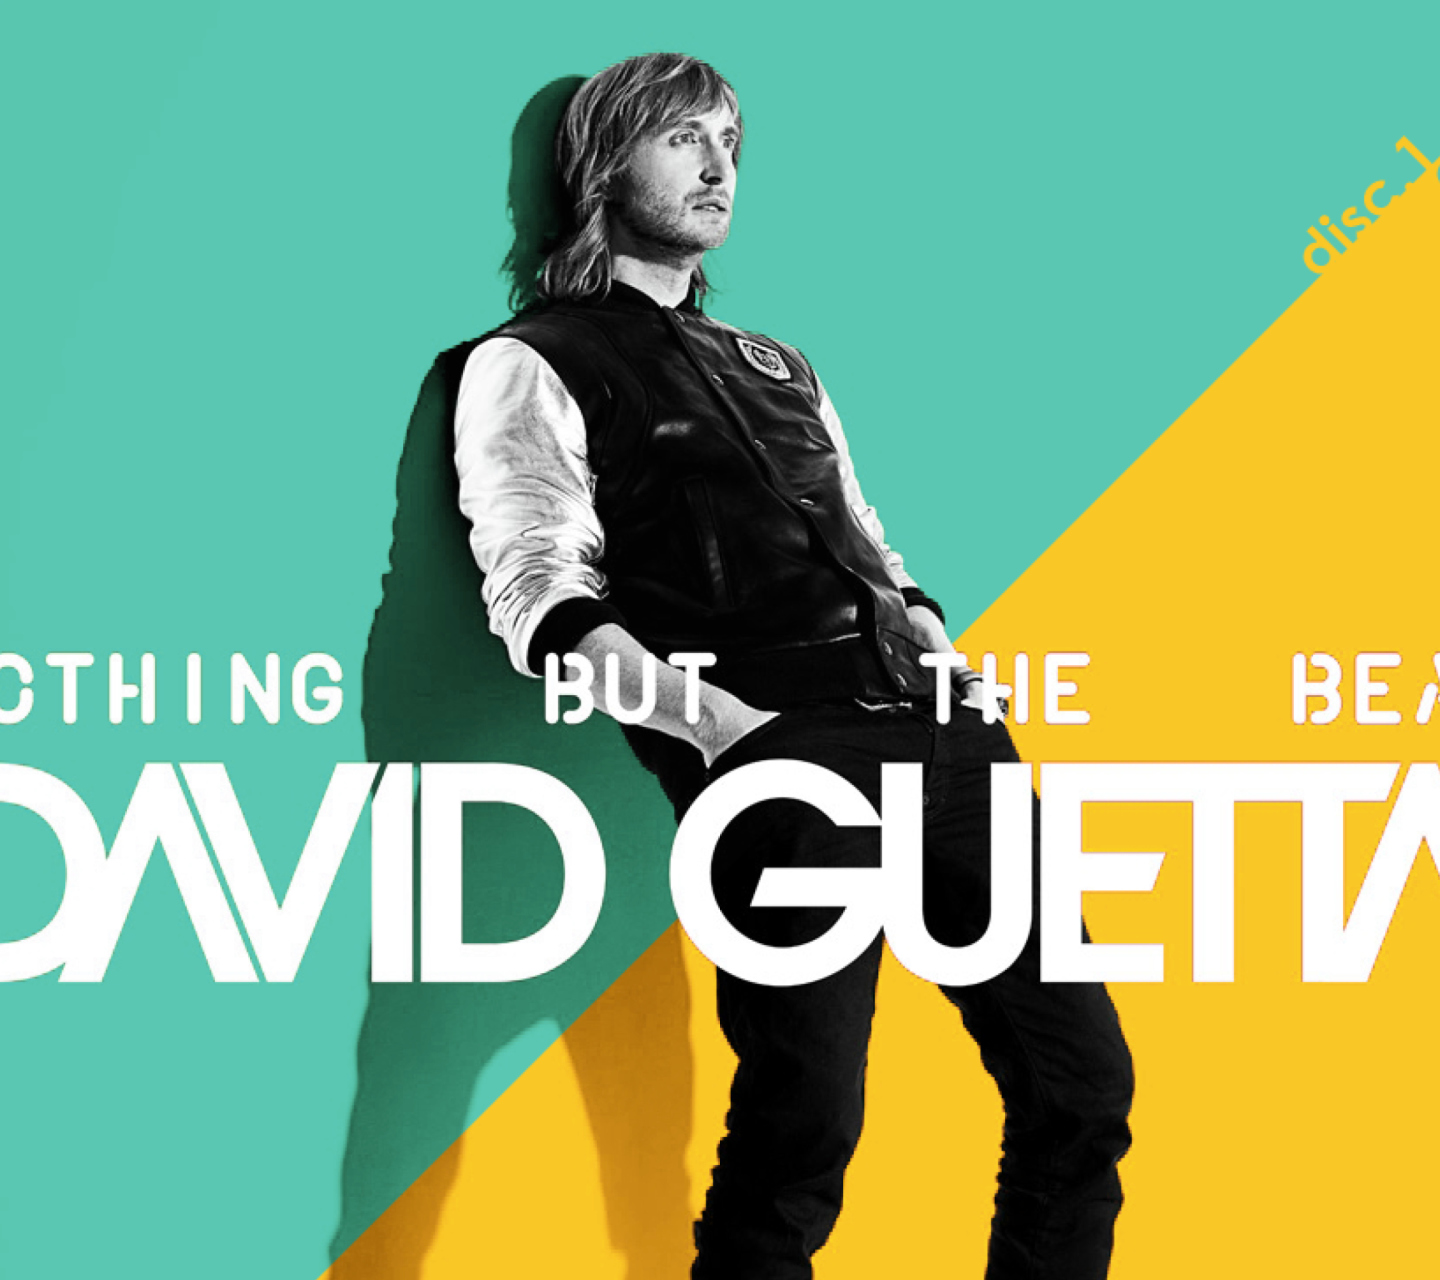 David Guetta - Nothing but the Beat screenshot #1 1440x1280